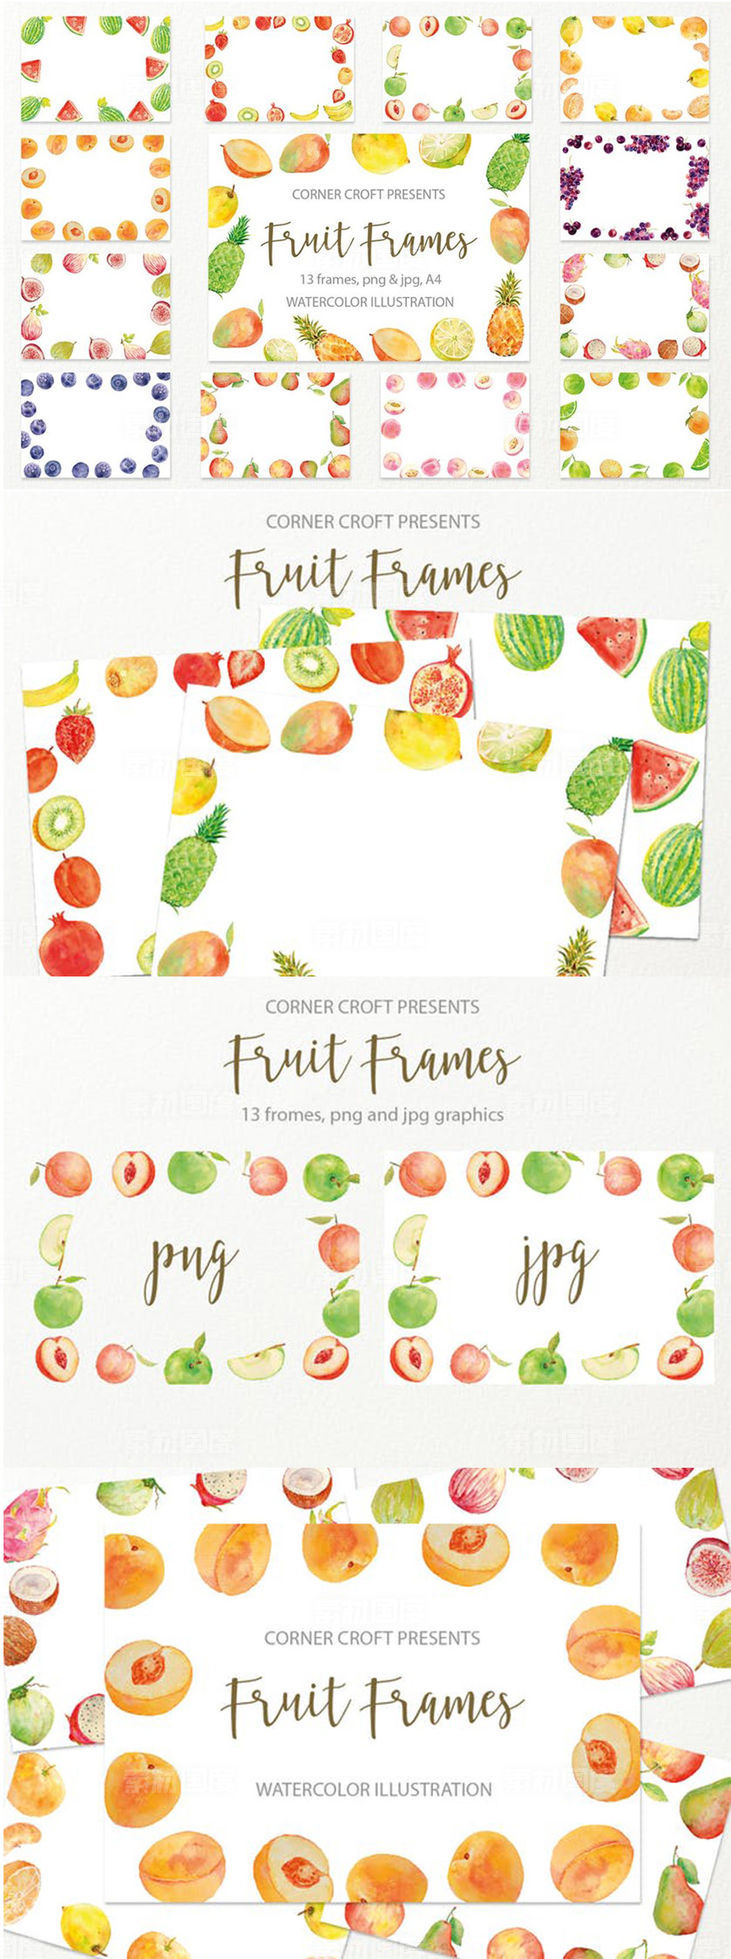 水果水彩手绘装饰框架插图素材 Watercolor fruit frame